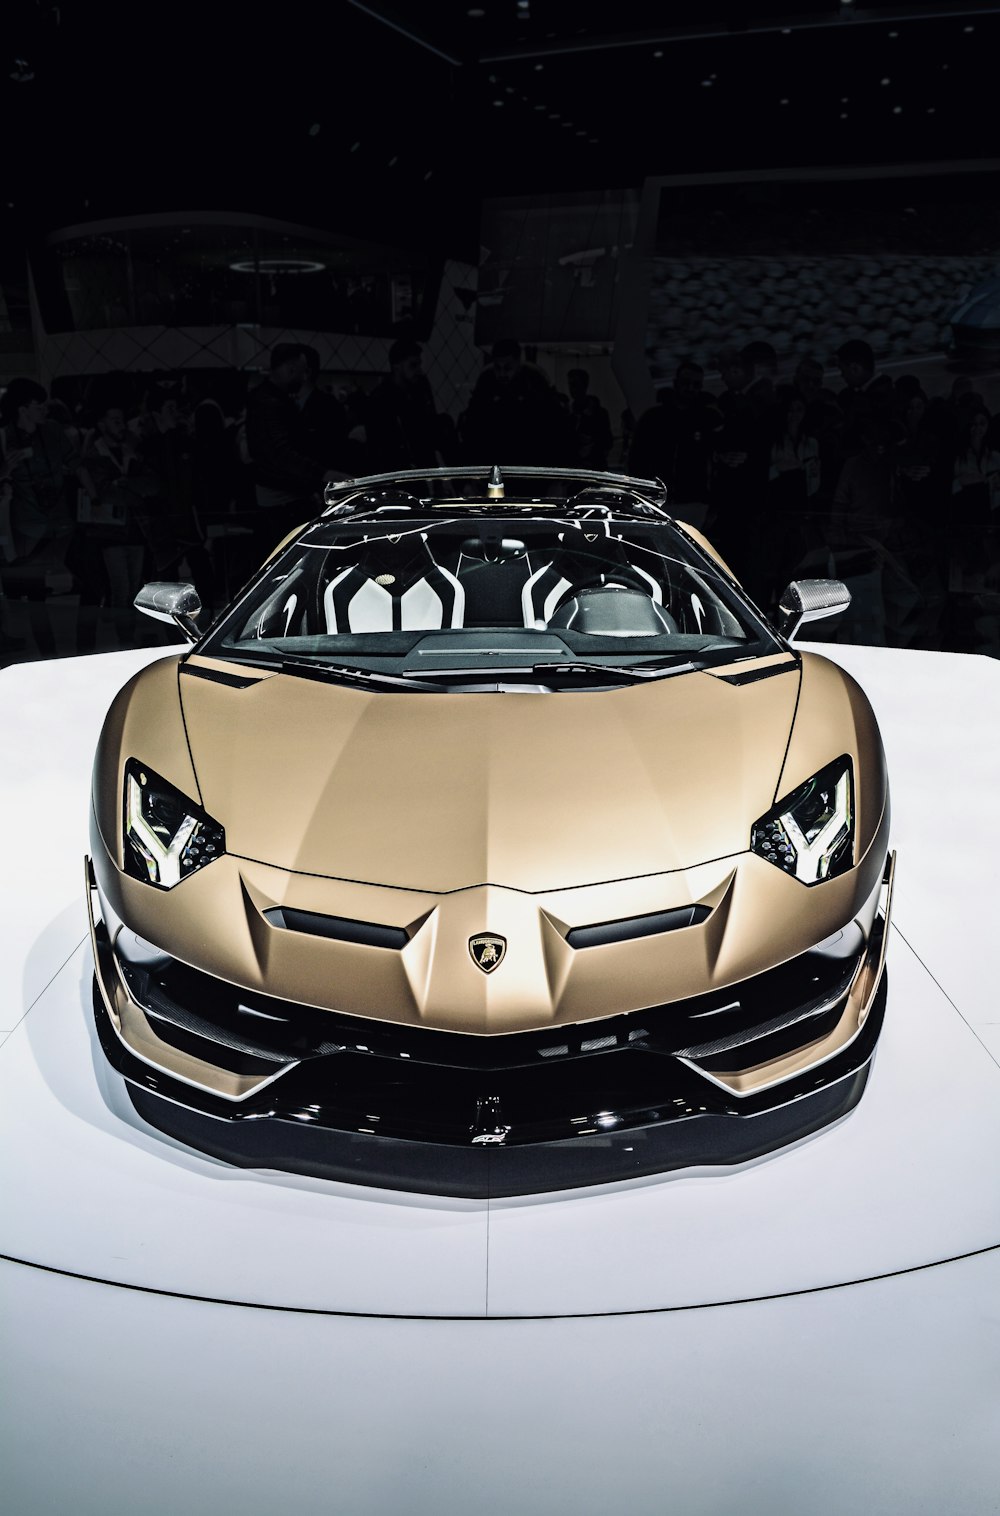 Más de 100 imágenes de Lamborghini | Descargar imágenes gratis en Unsplash